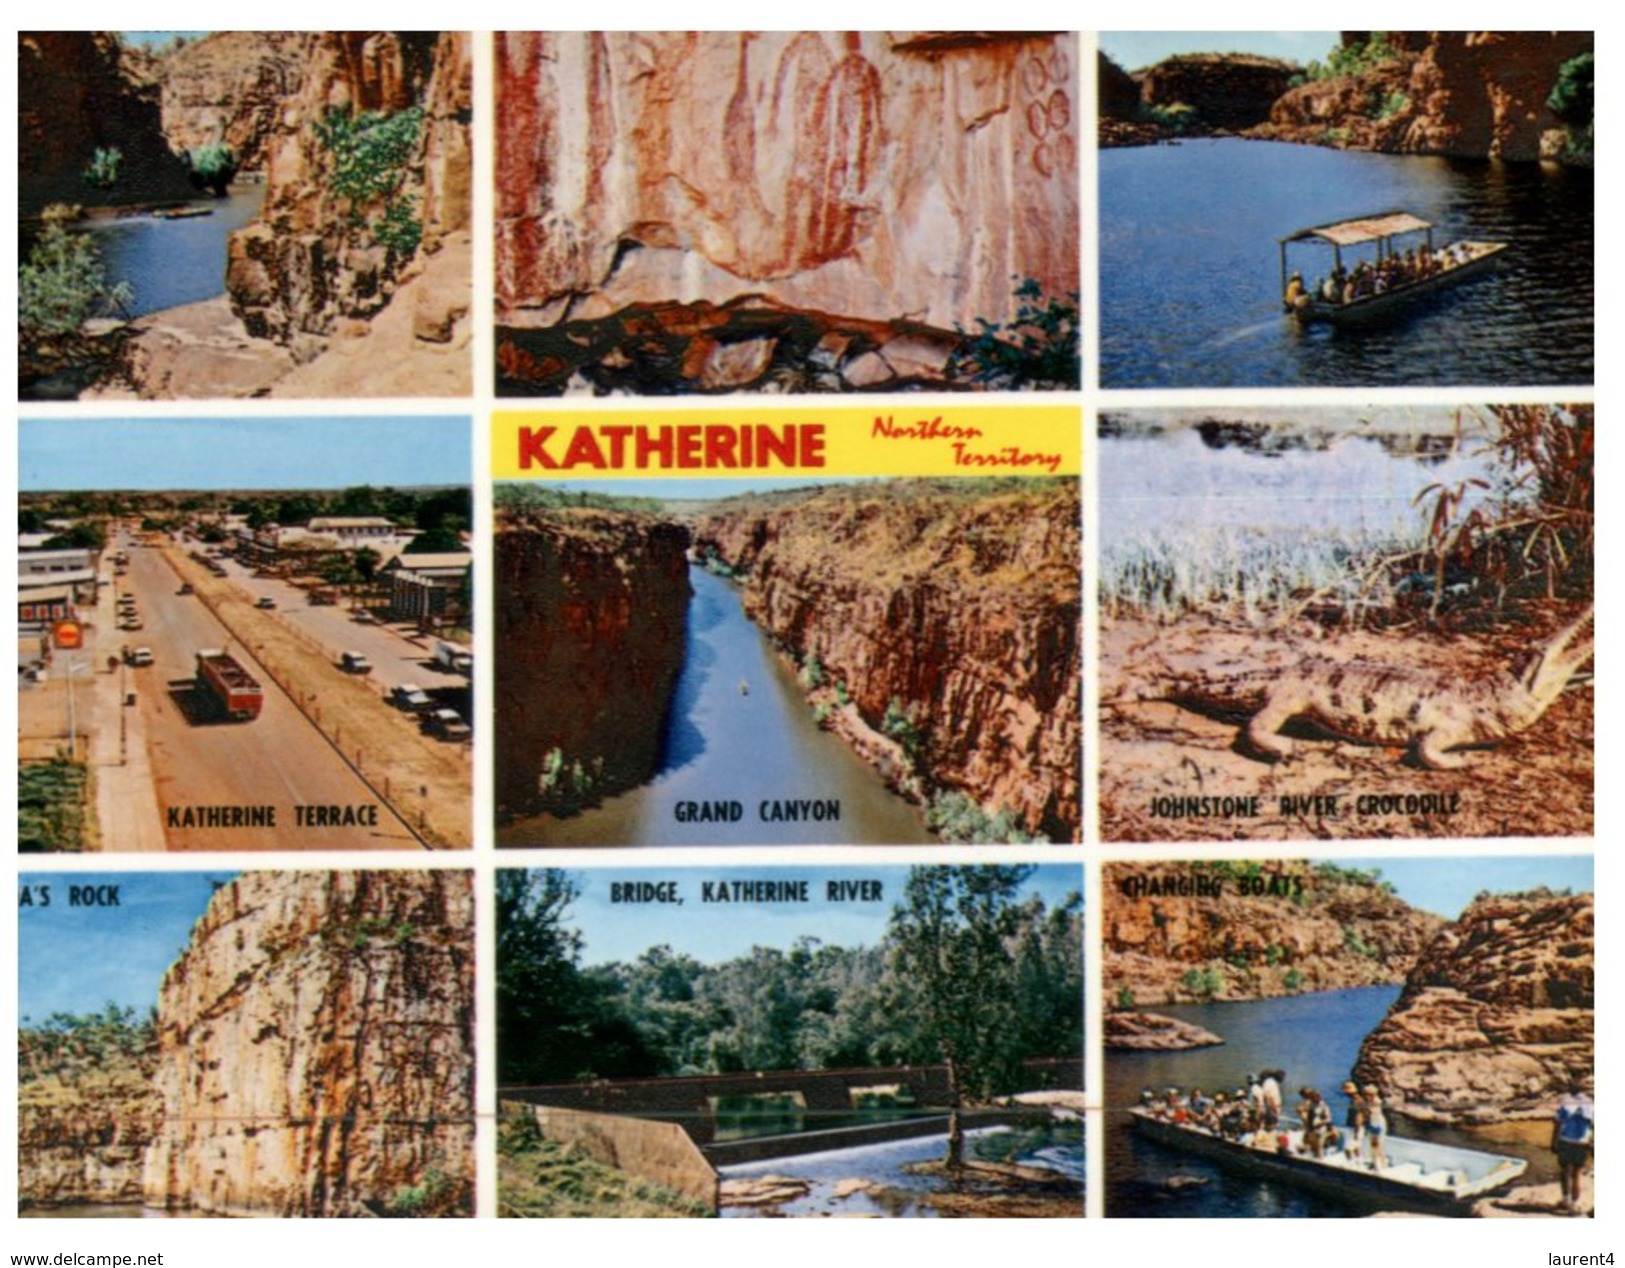 ((505) Australia - NT - Katherine - Katherine